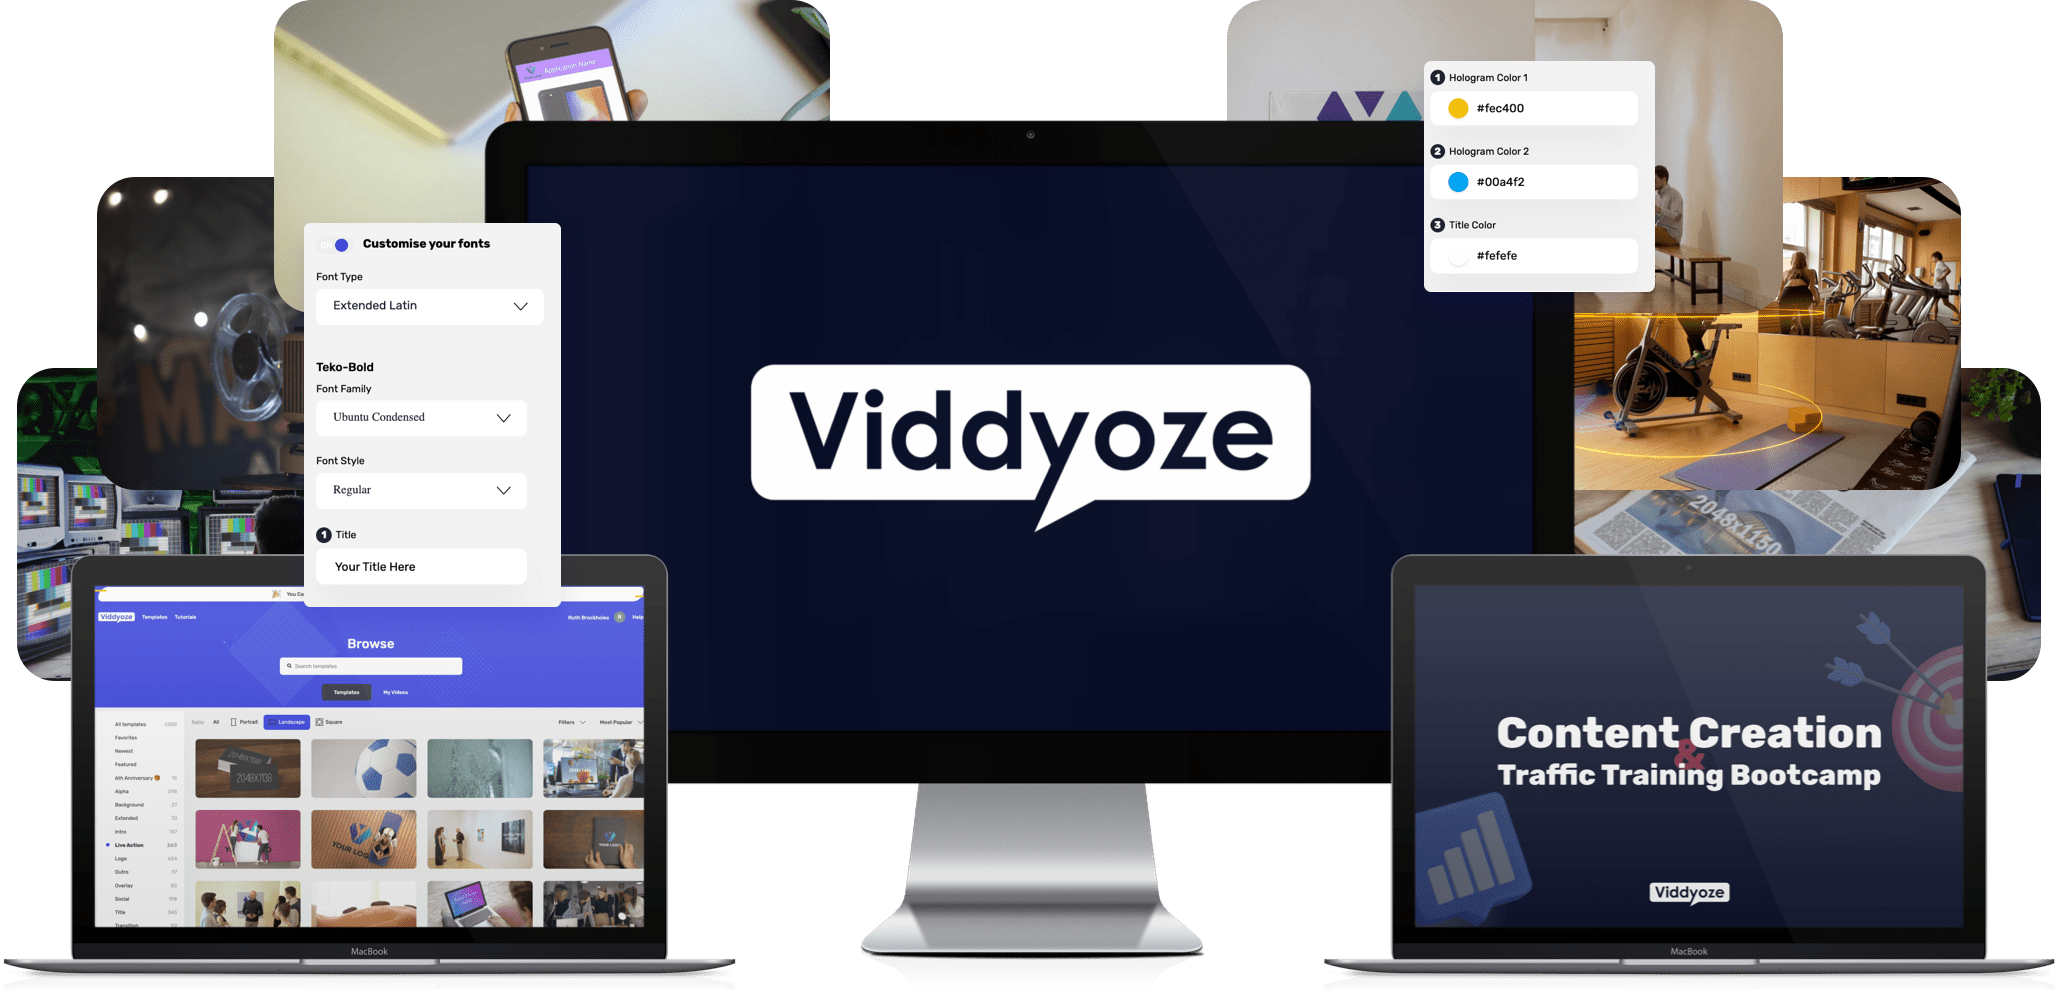 Get Viddyoze Today!